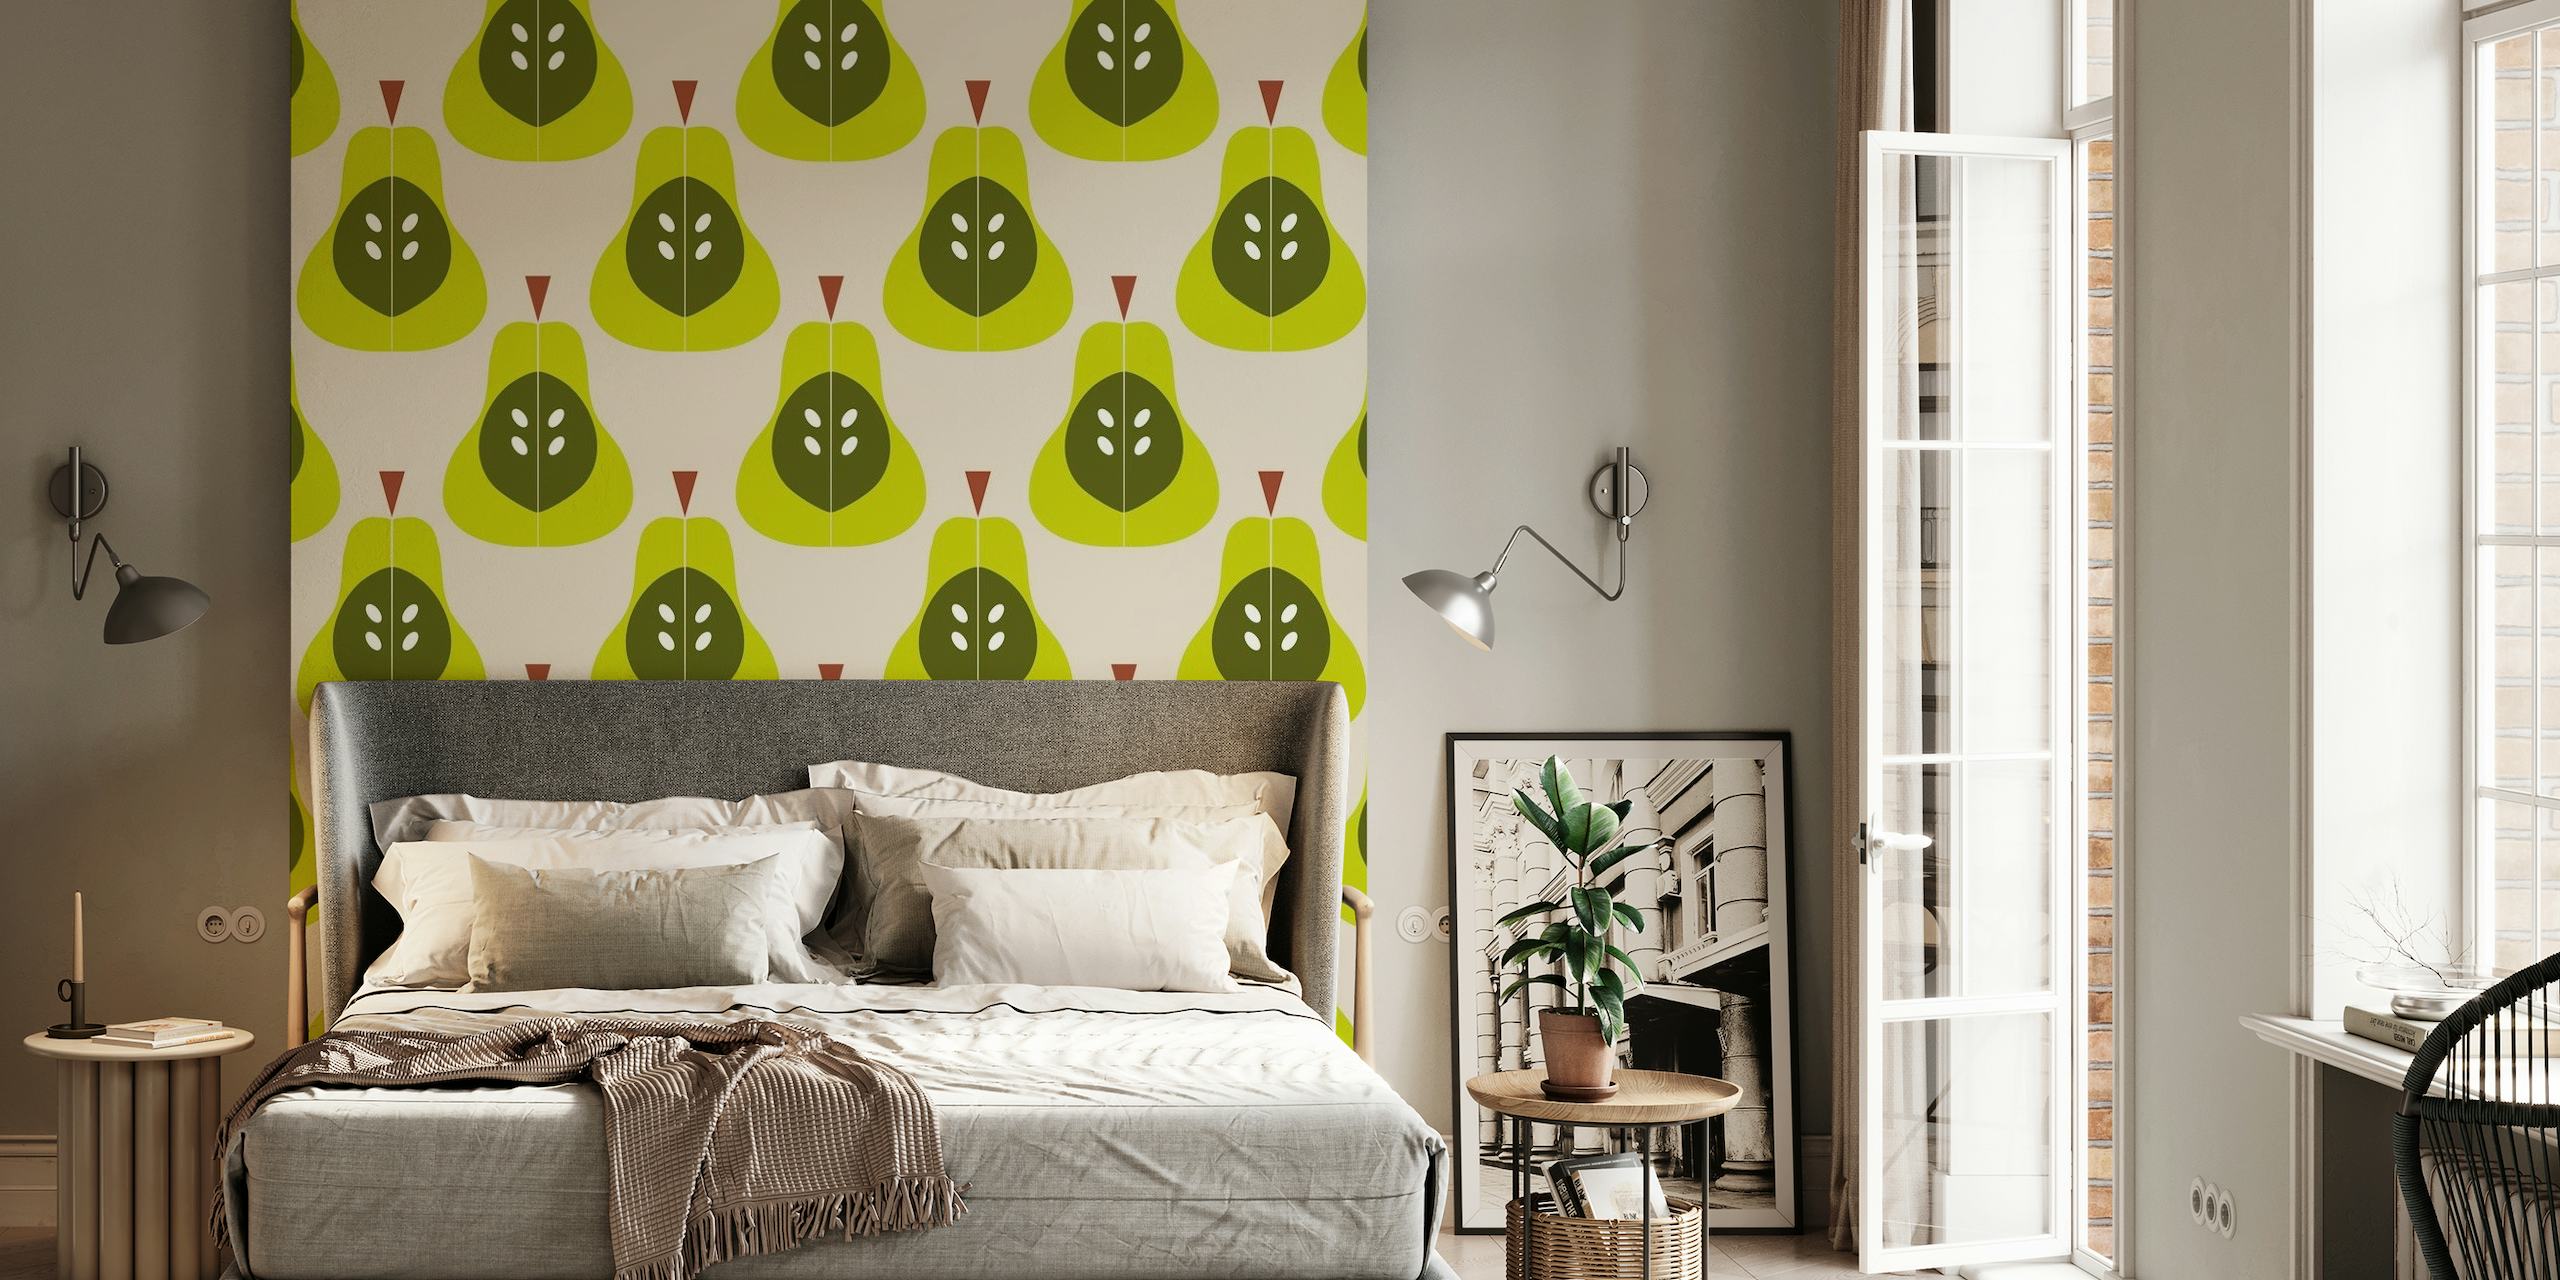 Fototapeta Green Pears se stylizovaným vzorem hrušek a listů na neutrálním pozadí